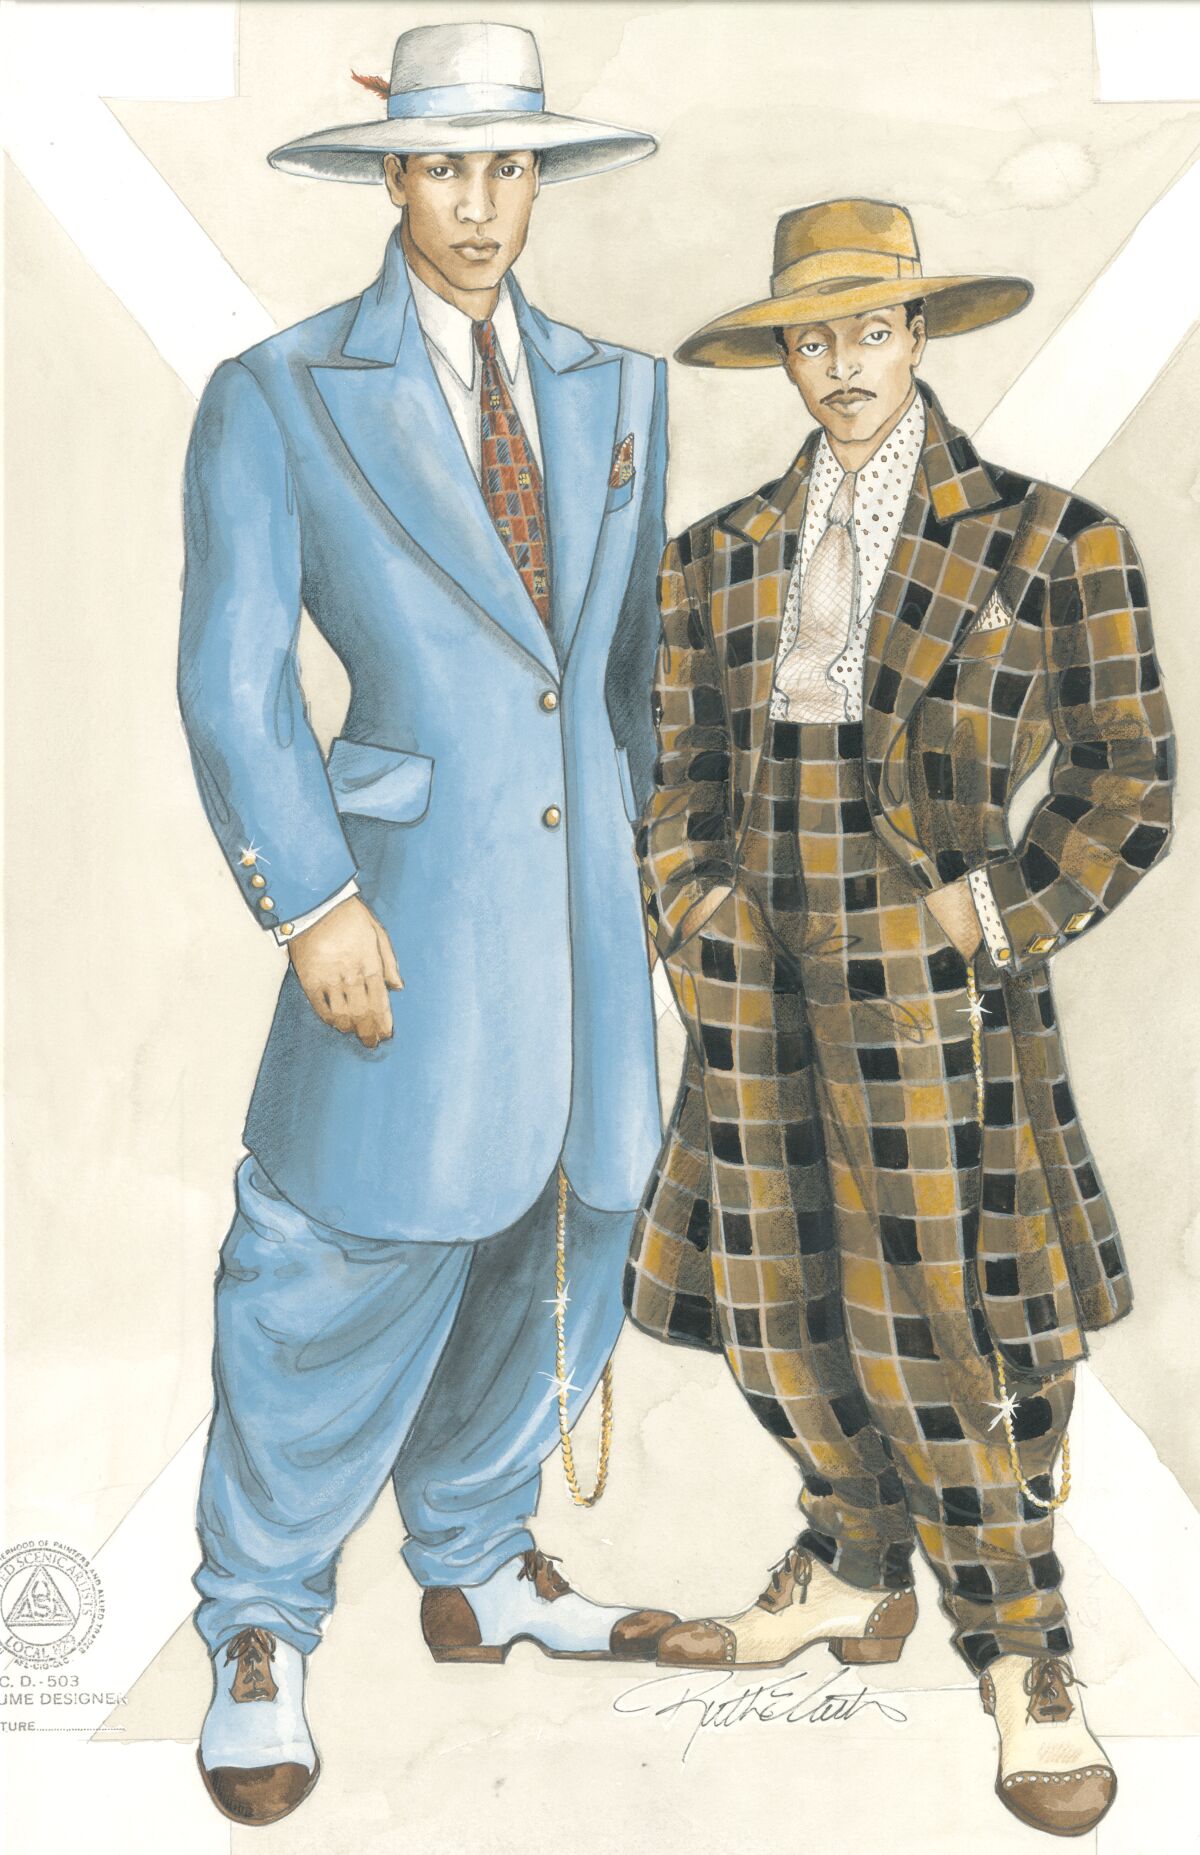 رسم تخطيطي للأزياء التي يرتديها مالكولم إكس (دينزل واشنطن) وشورتي (سبايك لي) في الفيلم "مالكولم إكس."